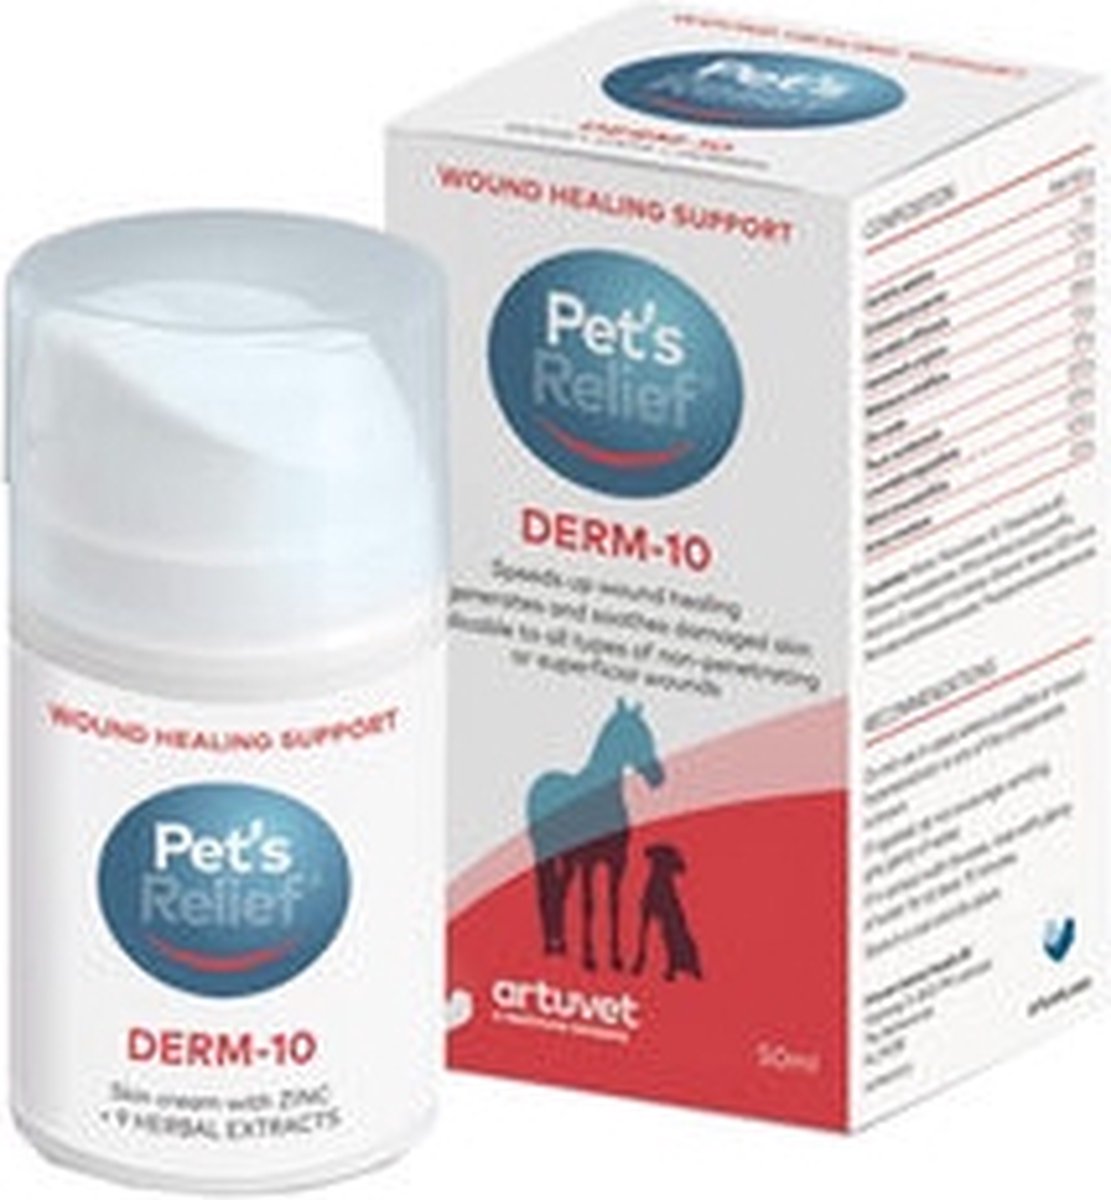 Pet's Relief Derm-10 - 50 ml - Pet's Relief